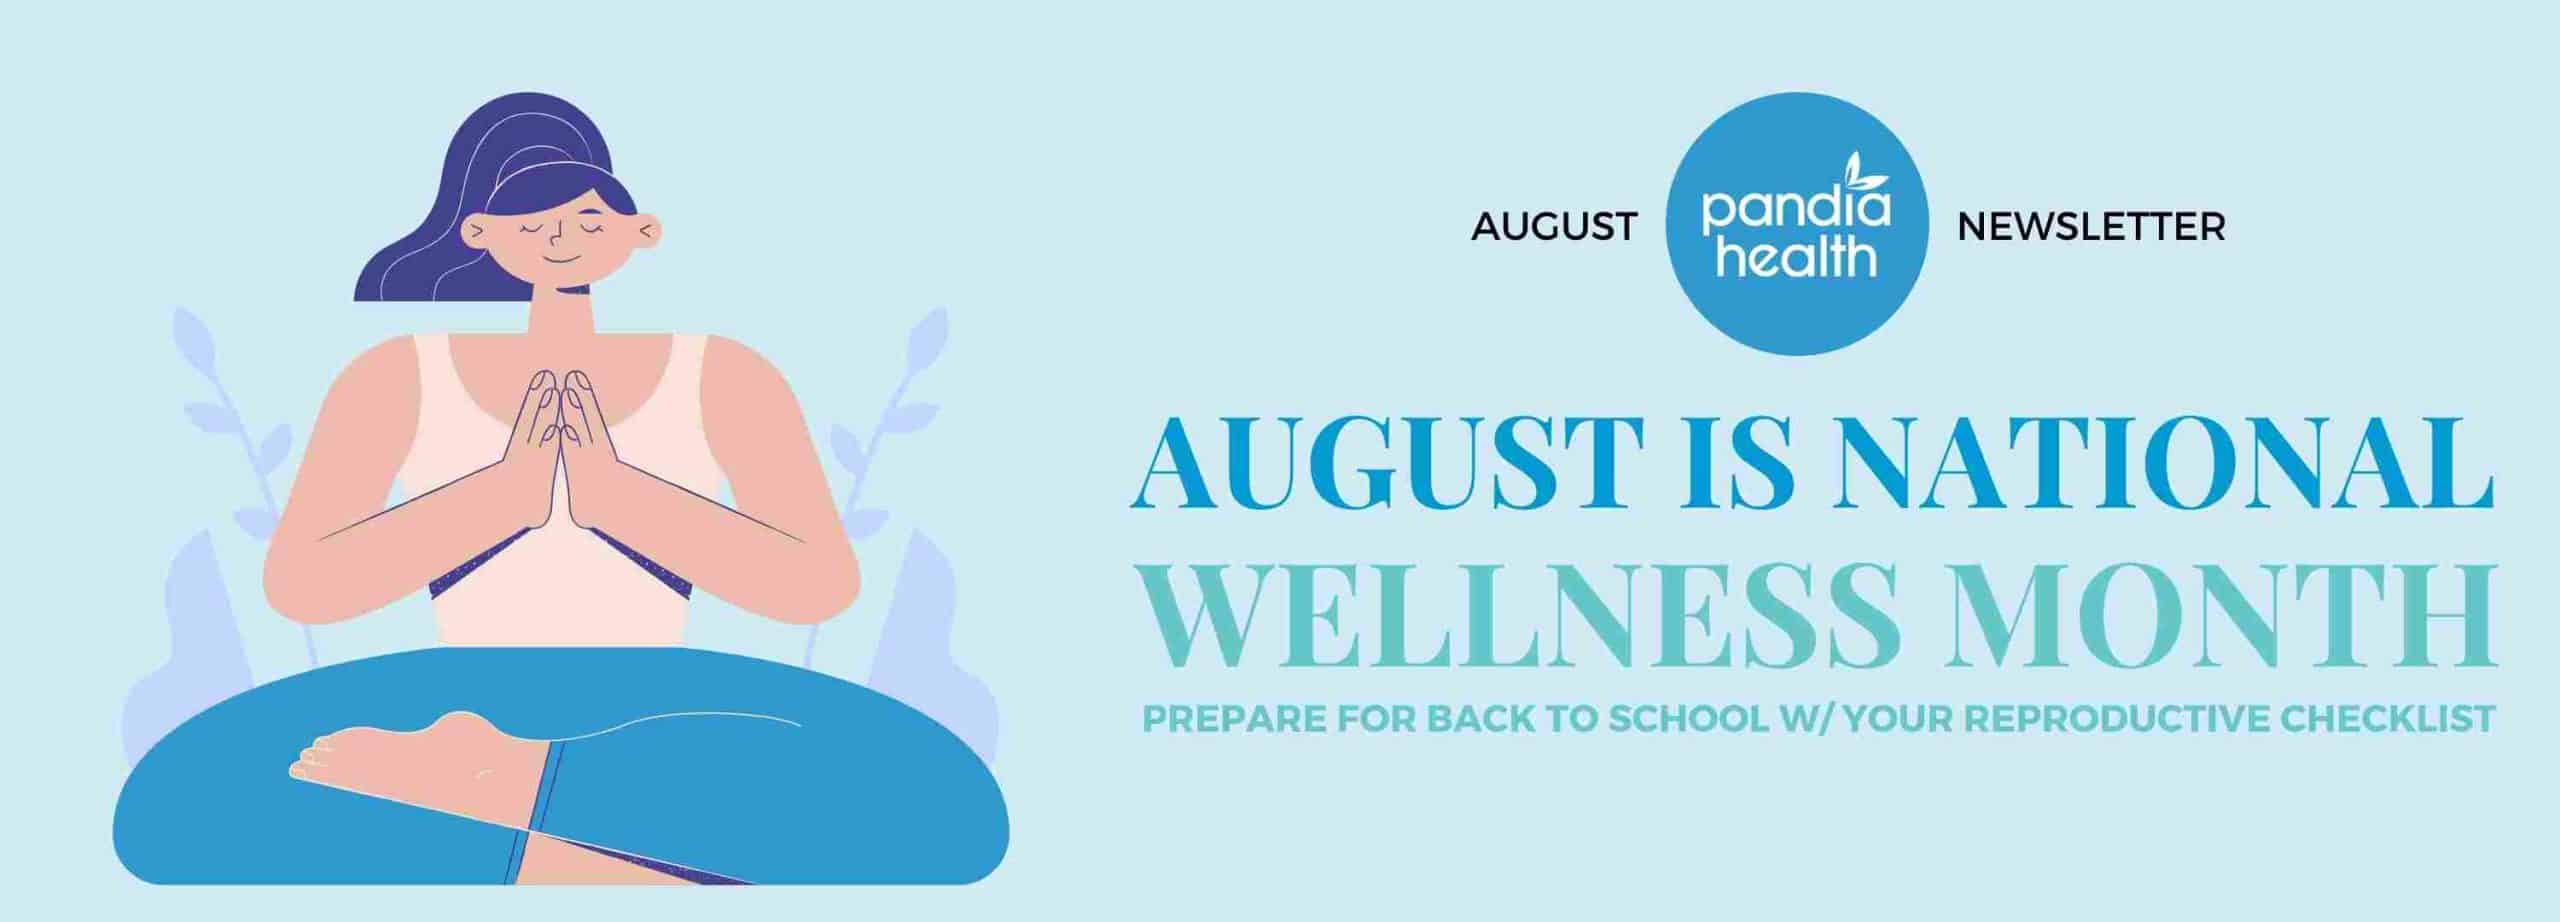 August wellness month Newsletter